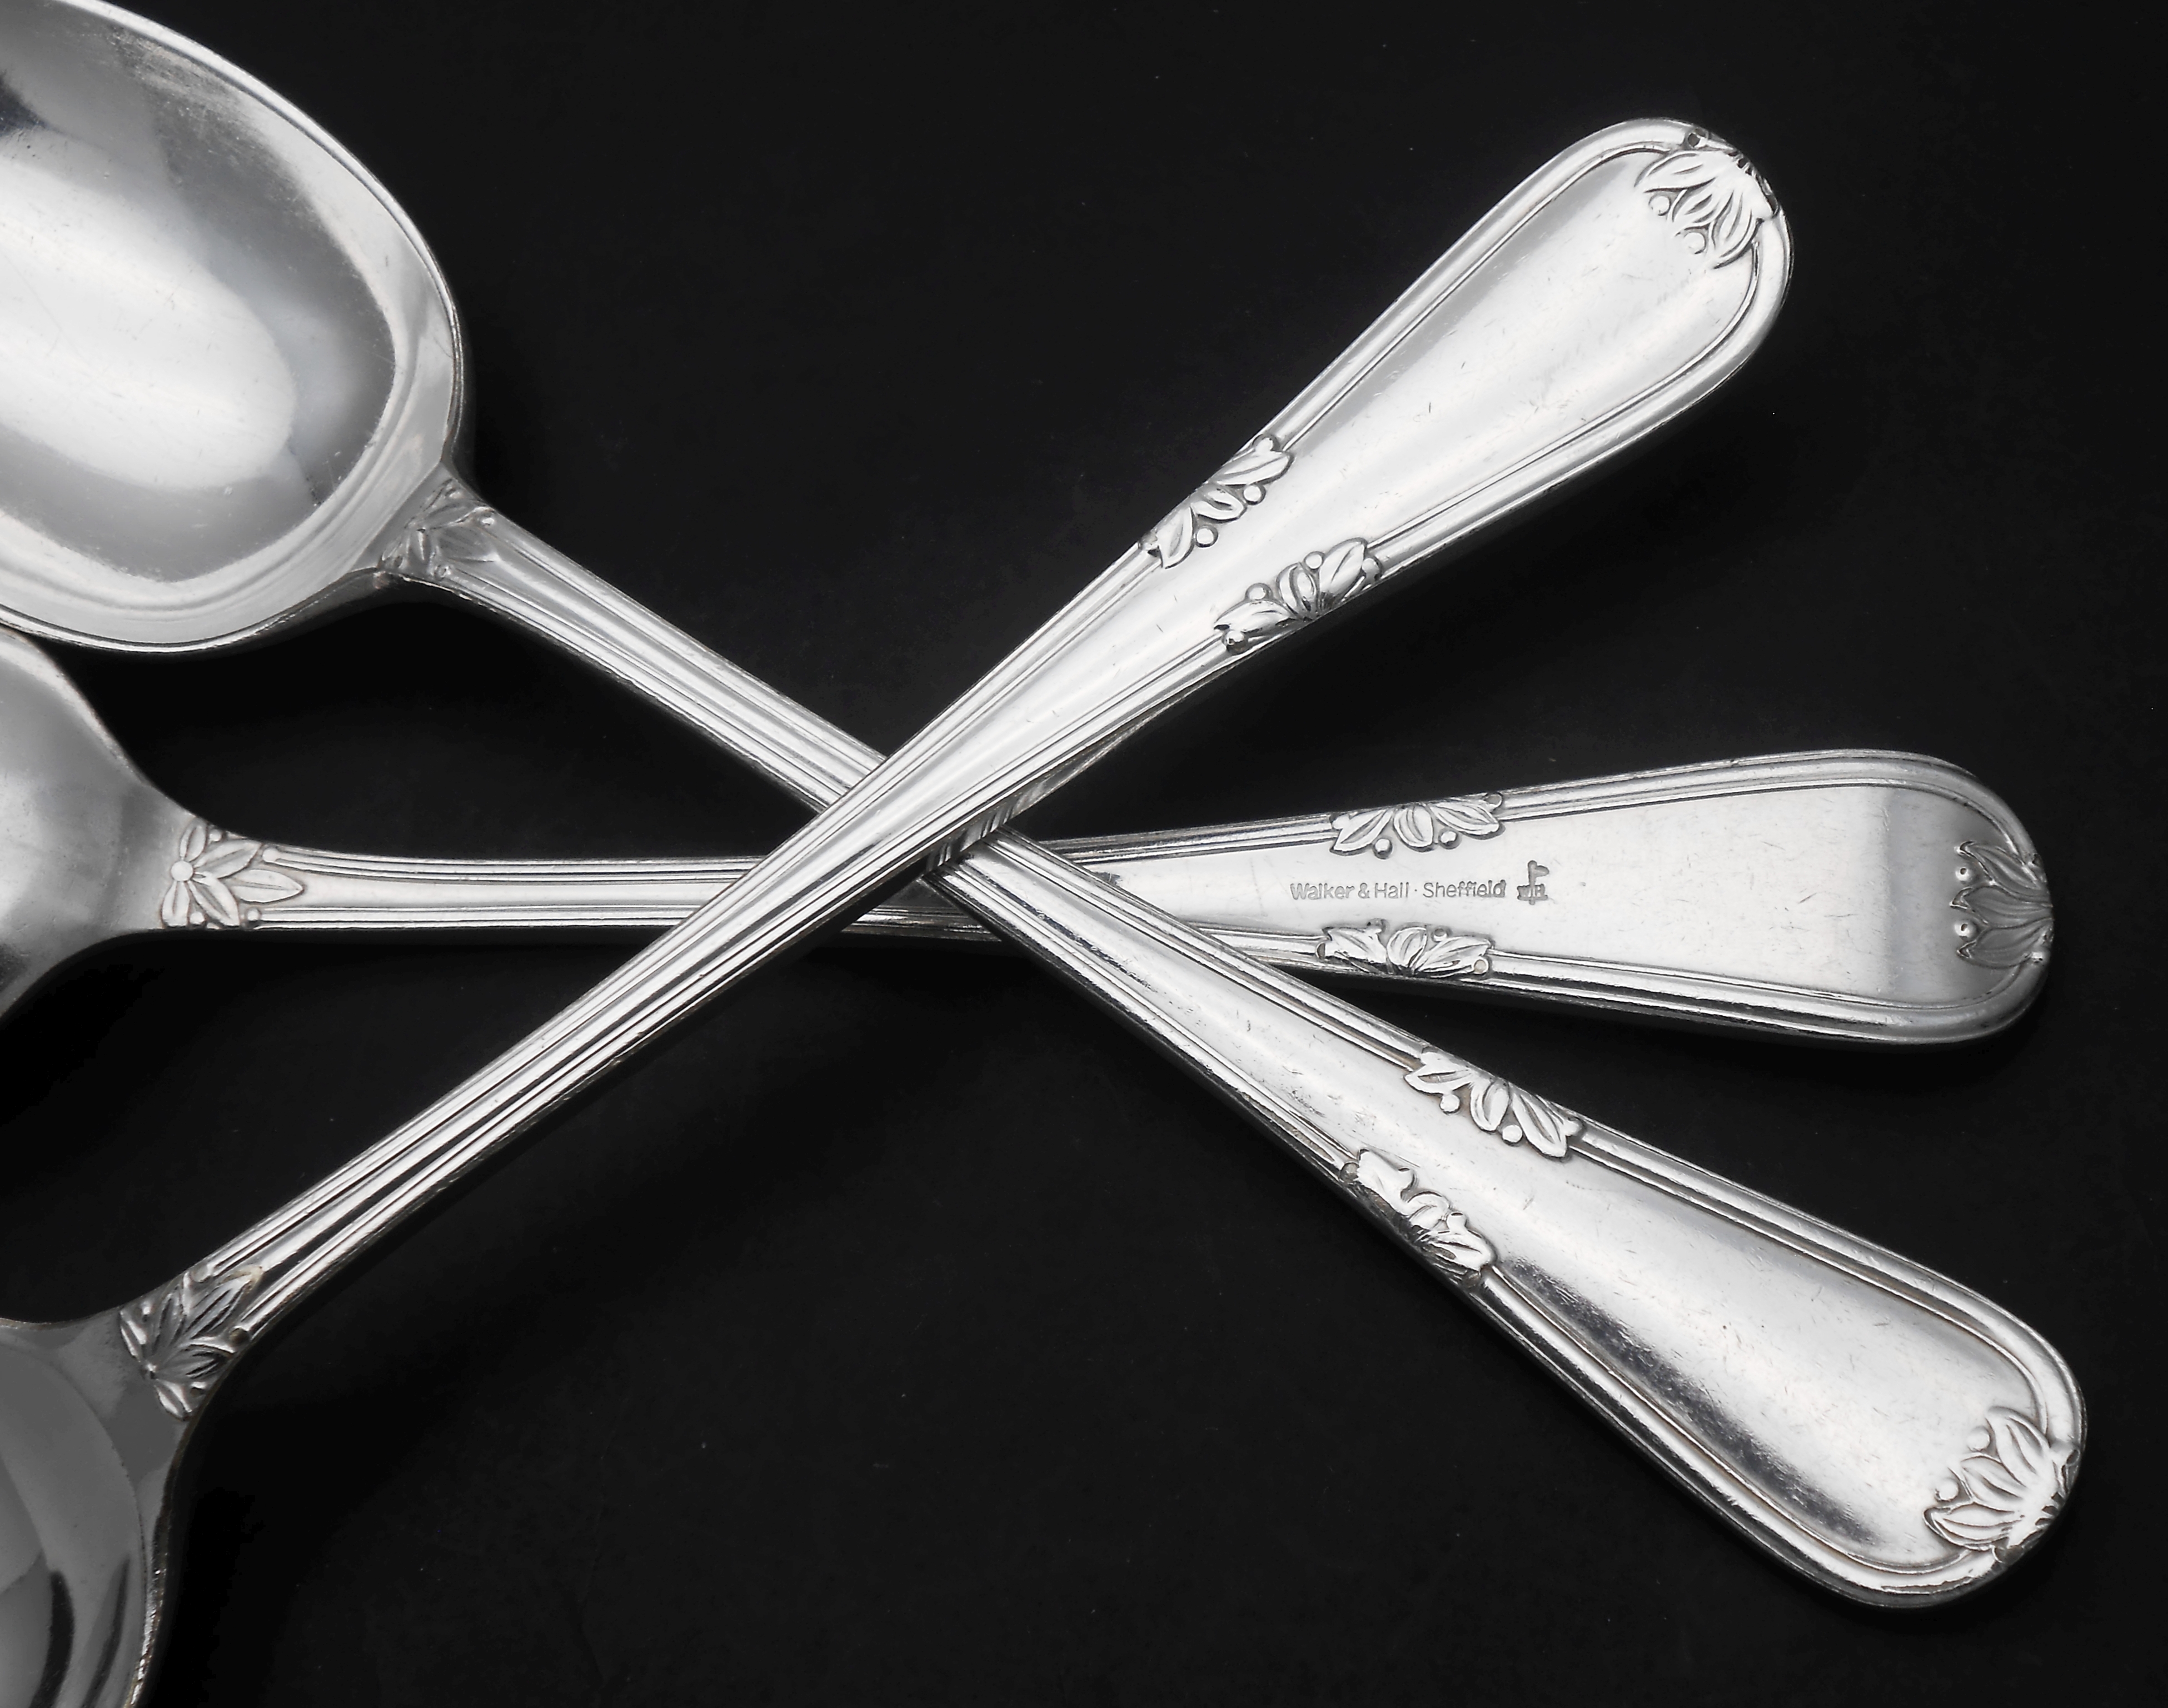 Walker & Hall Laurel pattern cutlery / flatware